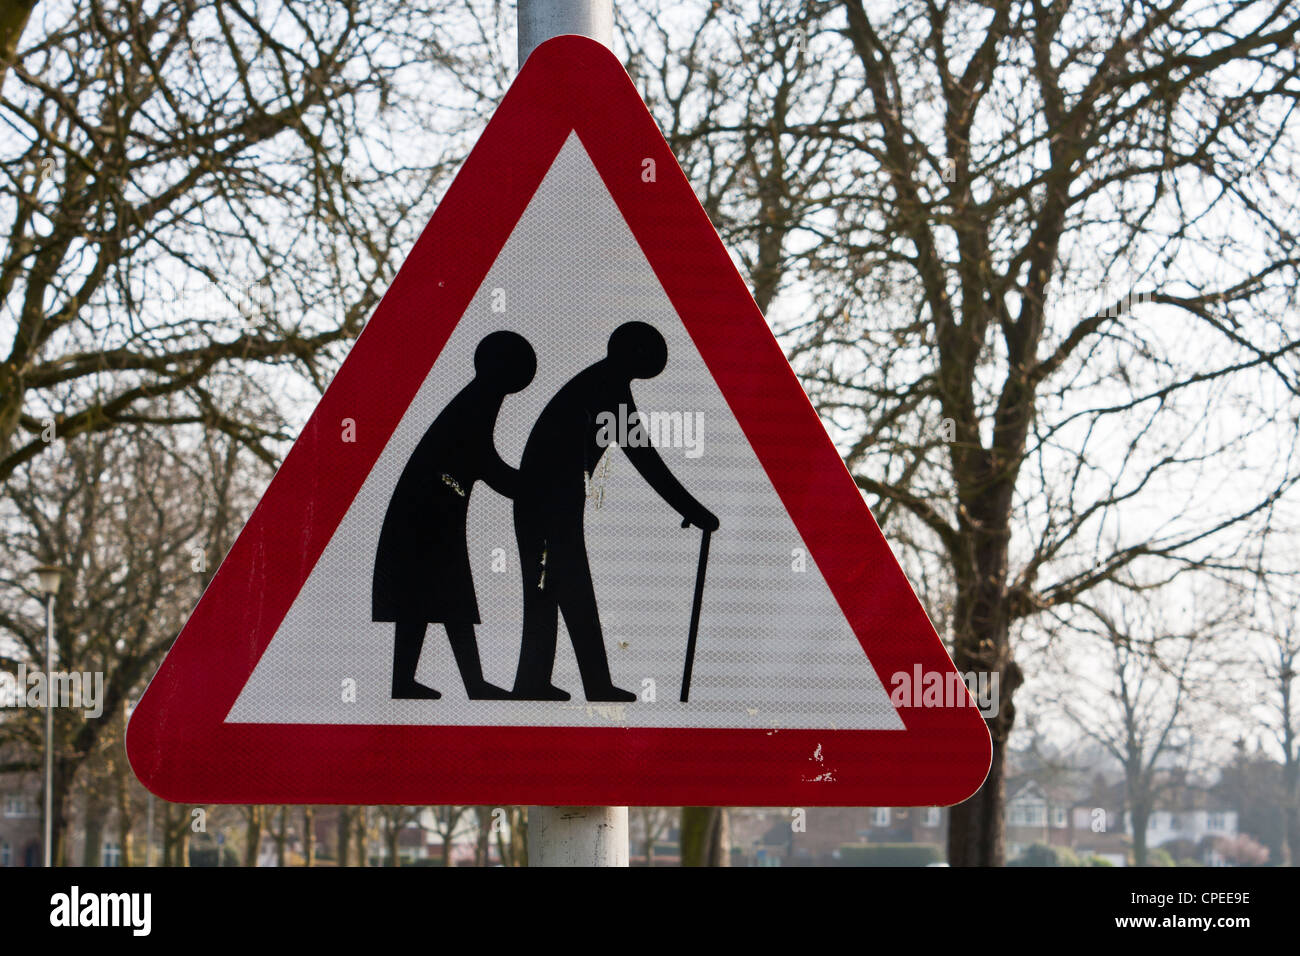 Eine rote dreieckige Verkehrszeichen Warnung der gebrechliche Fußgänger überqueren voraussichtlich Weg in die Zukunft. Stockfoto